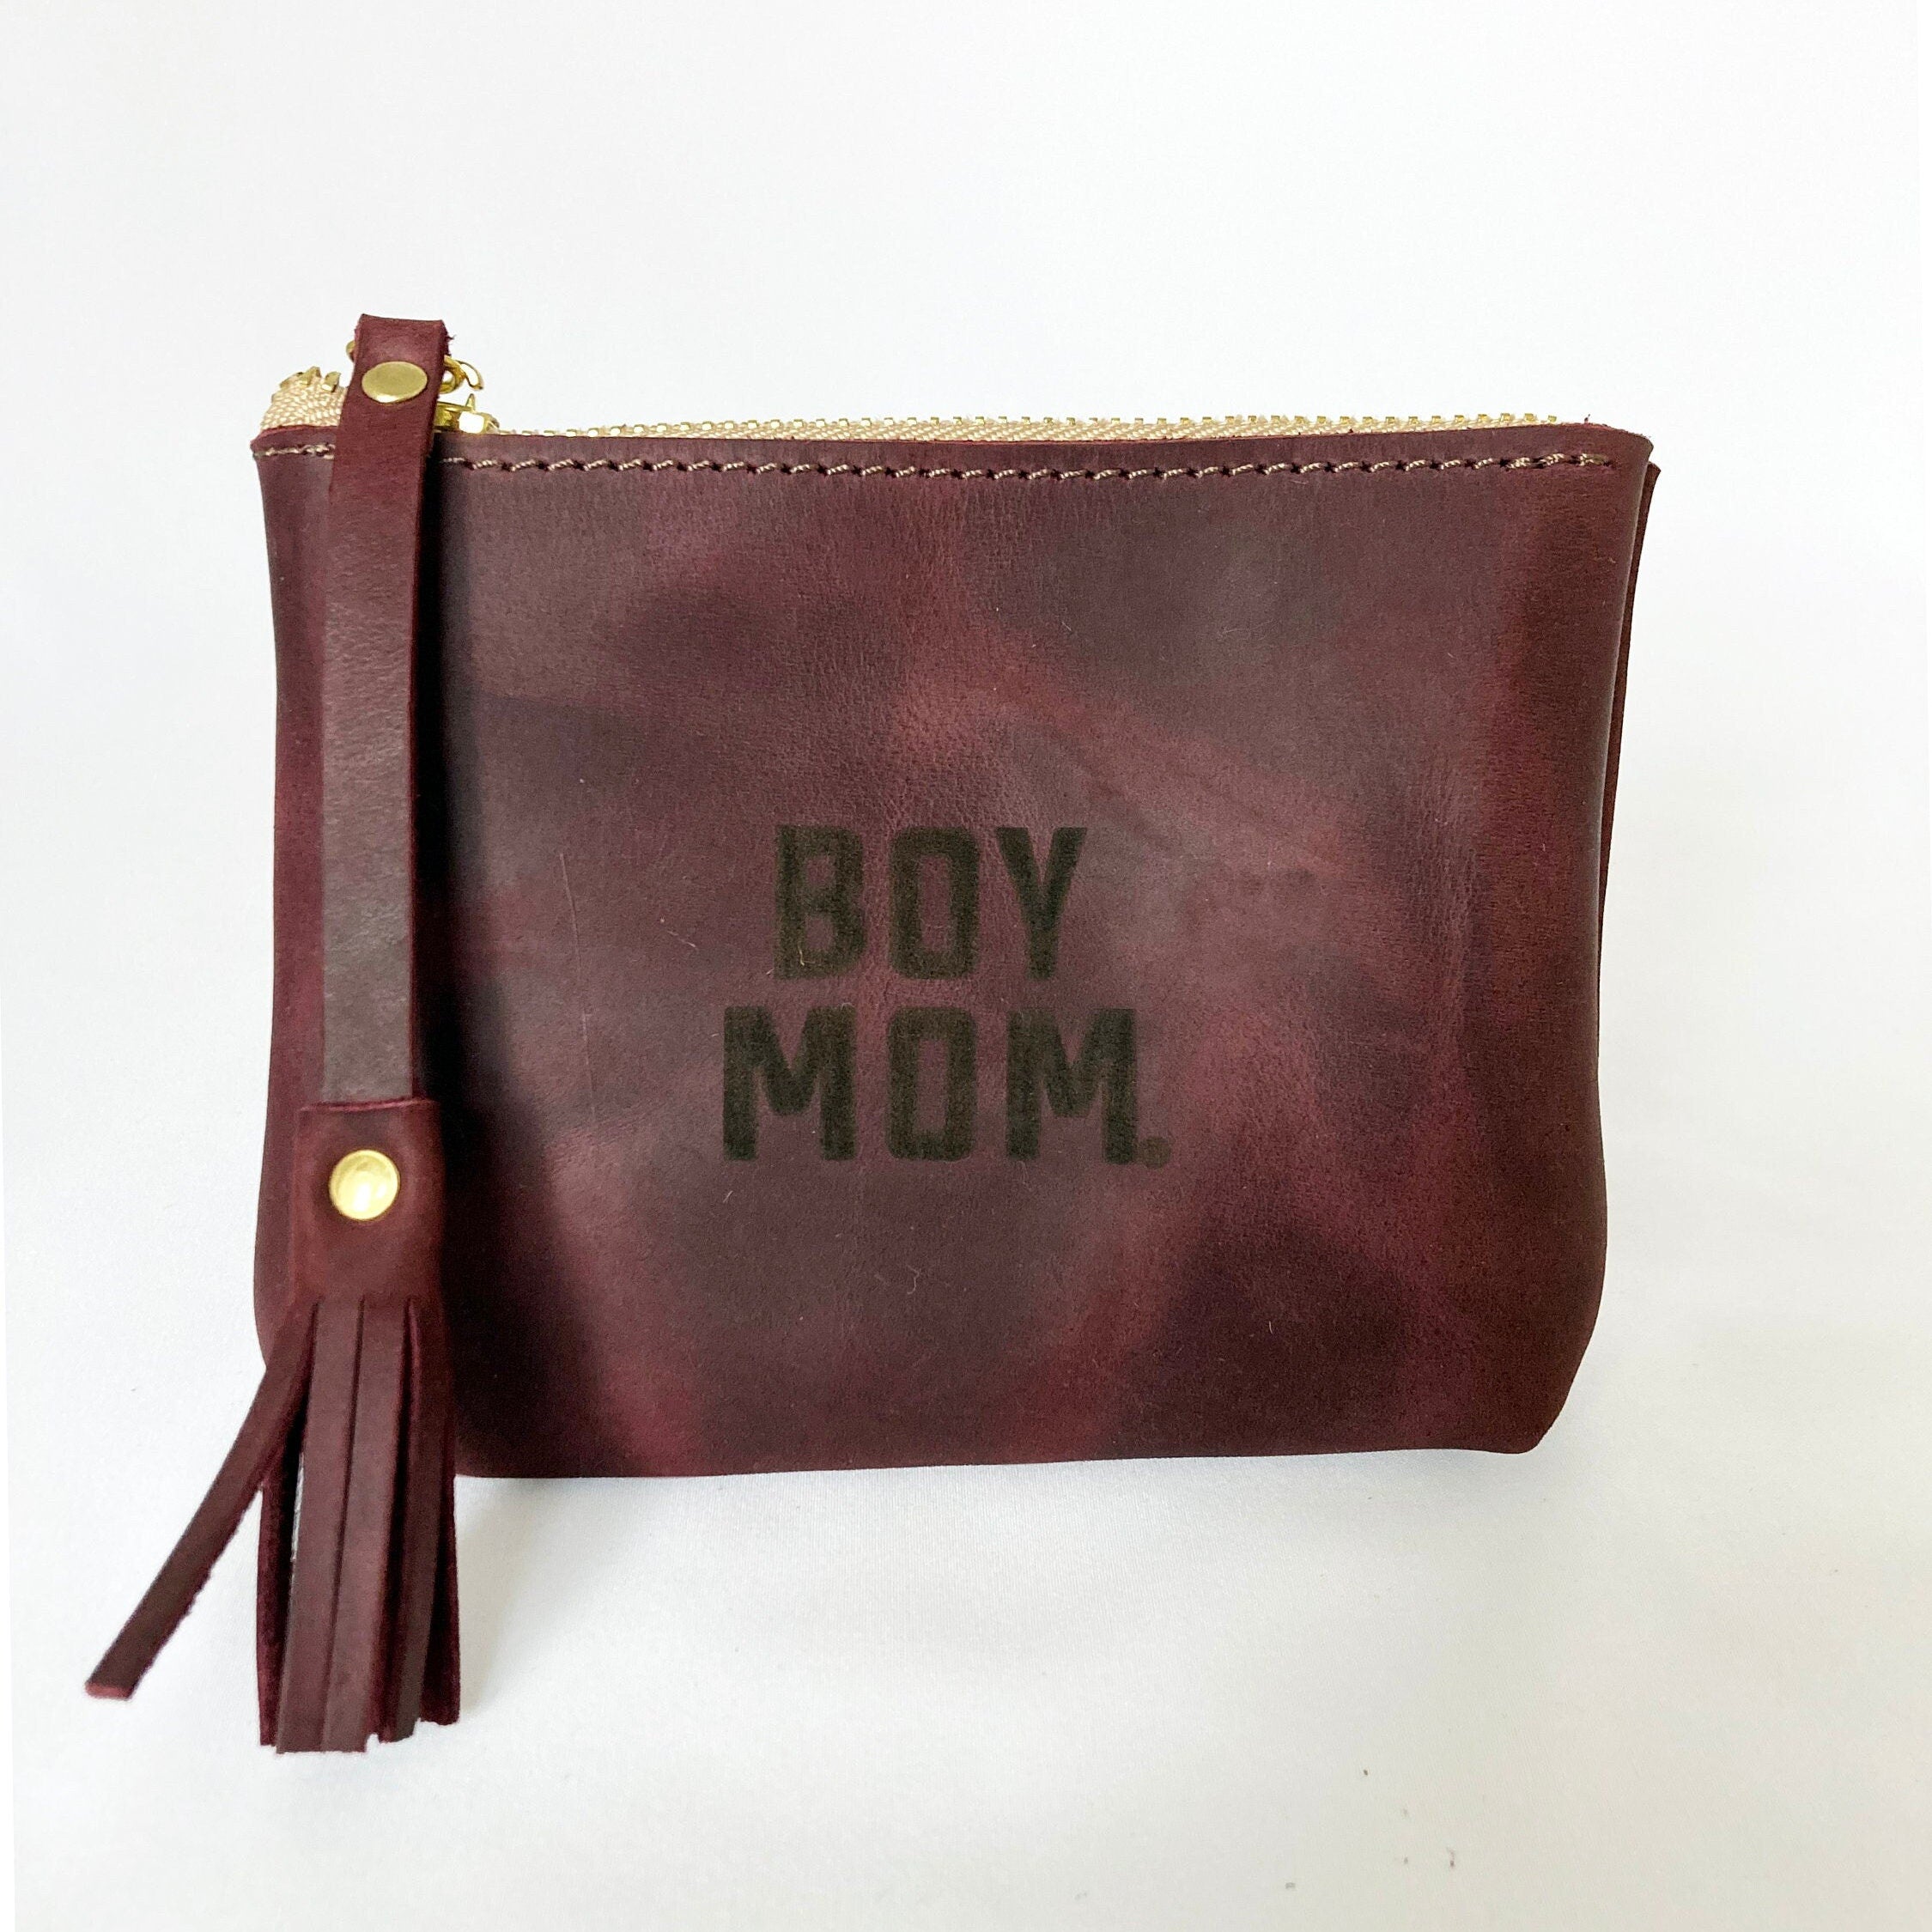 Boymom® Leather Pouch Modern Small